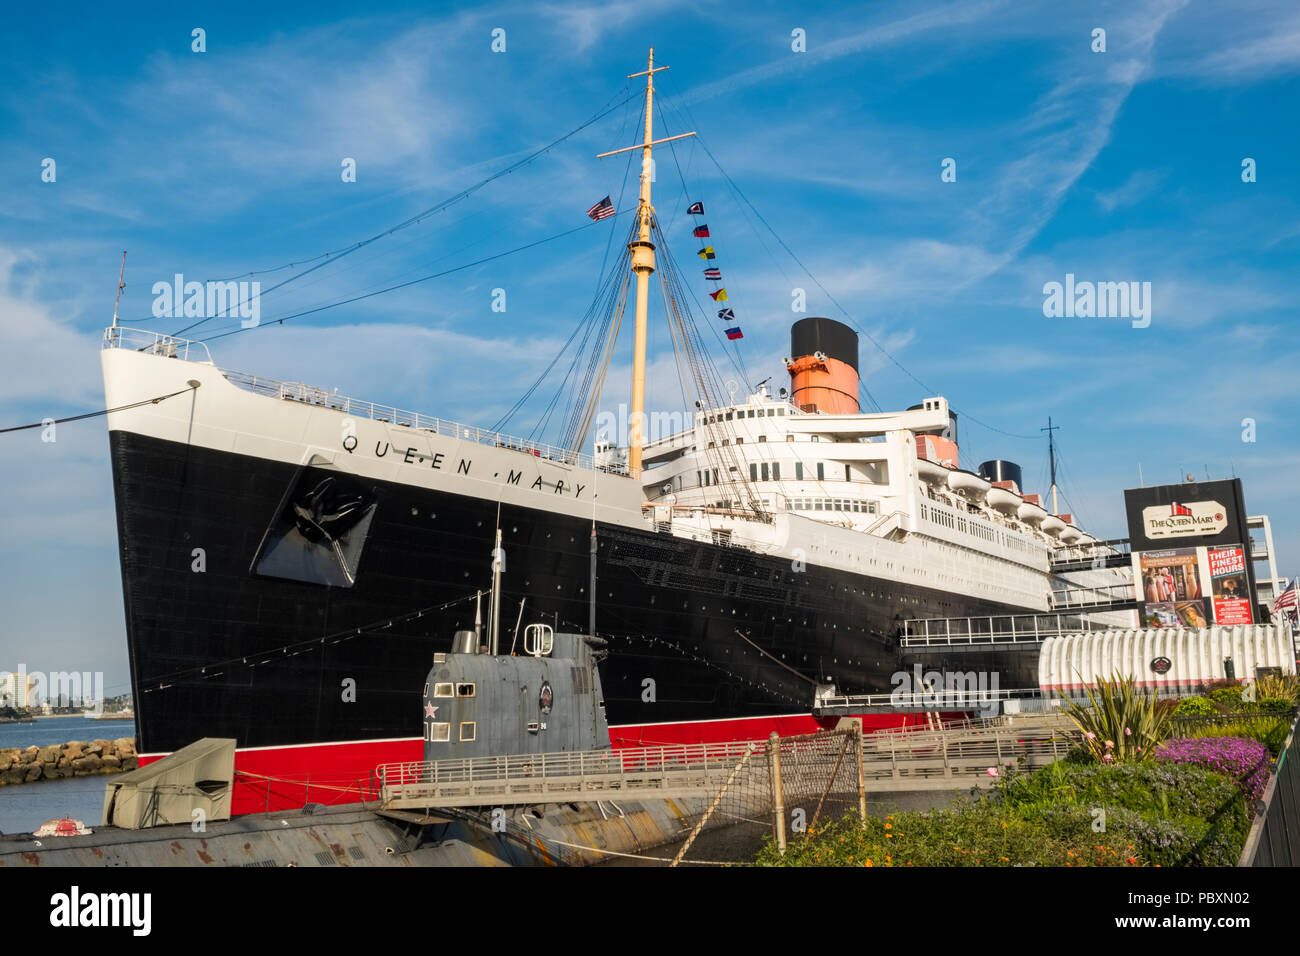 Le navire Queen Mary, maintenant un musée et une attraction touristique majeure avec le sous-marin russe amarré à côté, Scorpion à Long Beach, Californie, CA, US Banque D'Images